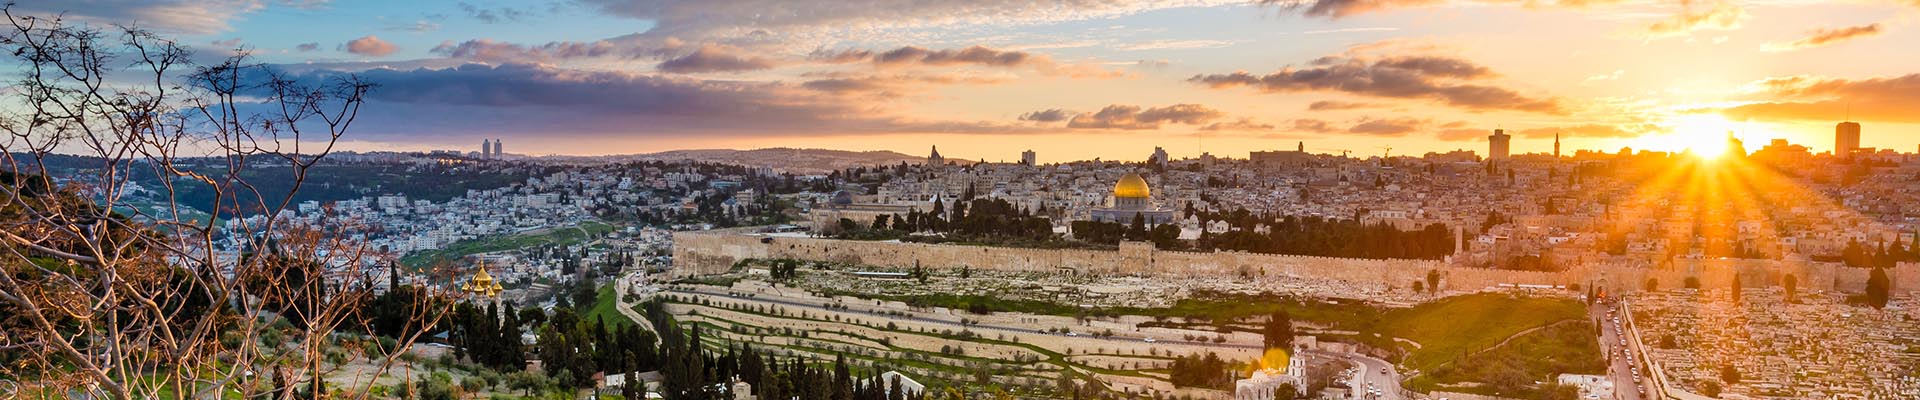 Viagem Privada Católica para Israel e Petra - 9 dias